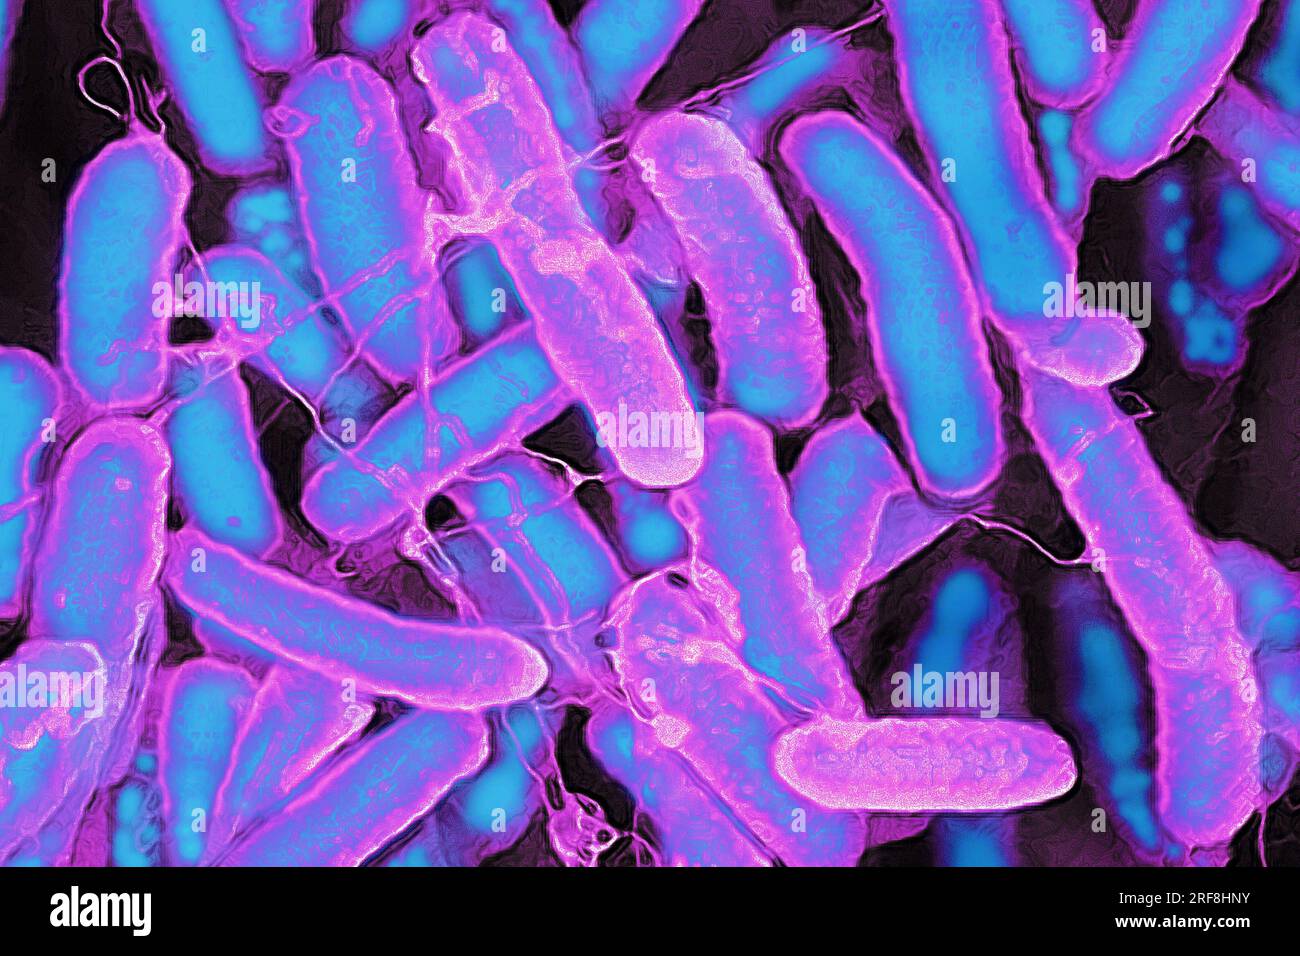 Escherichia coli (batteri intestinali che risiedono nel tratto digerente dell'uomo e degli animali a sangue caldo, è la causa dell'intossicazione alimentare. Foto Stock